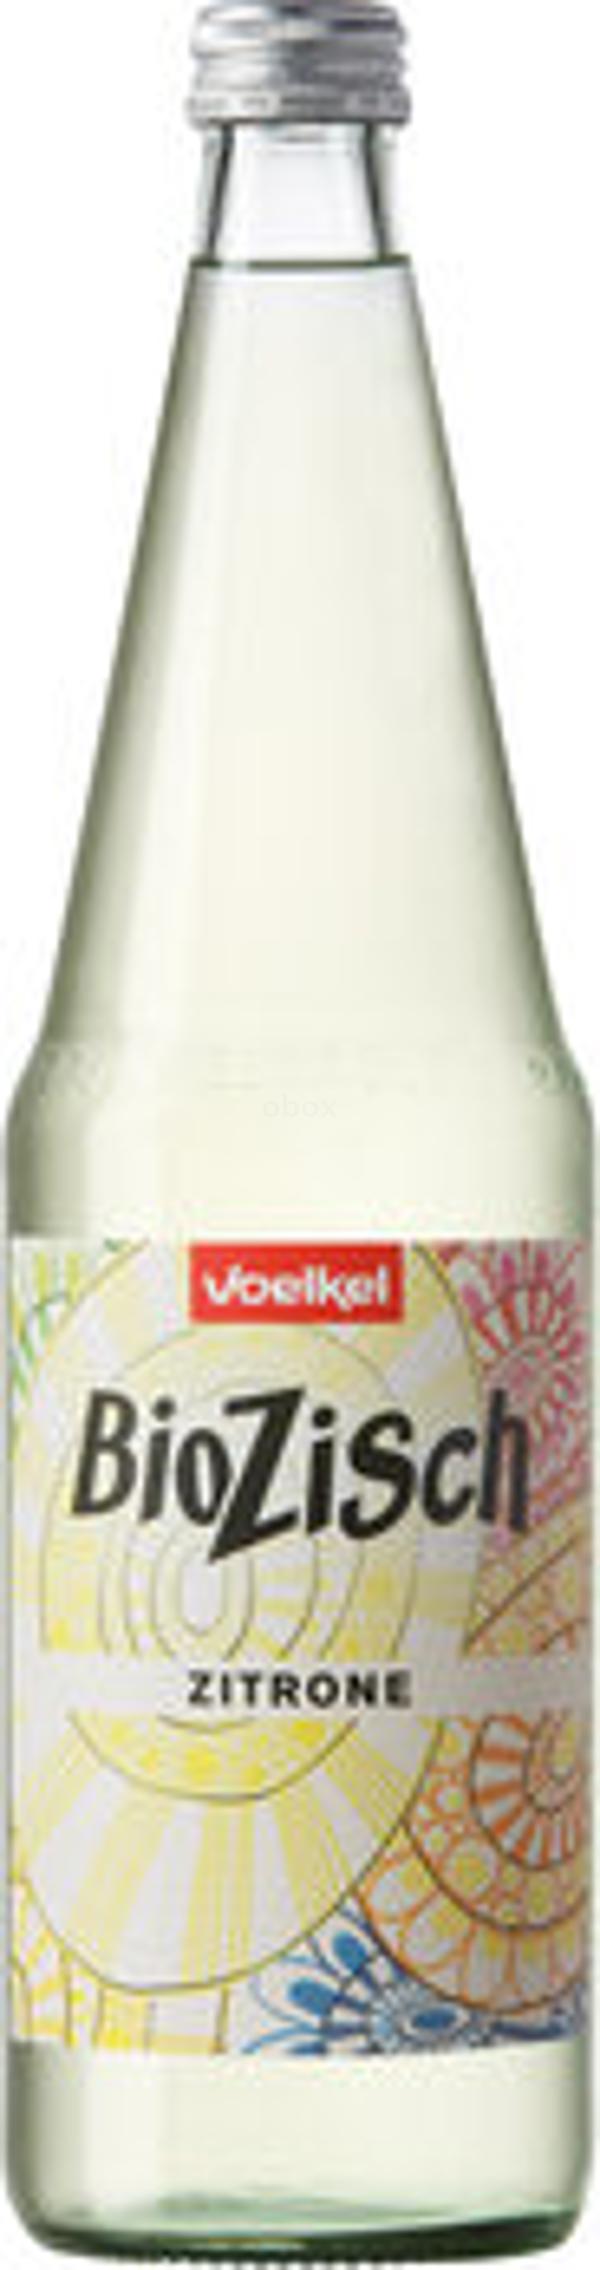 Produktfoto zu BioZisch Zitrone, 0,7l